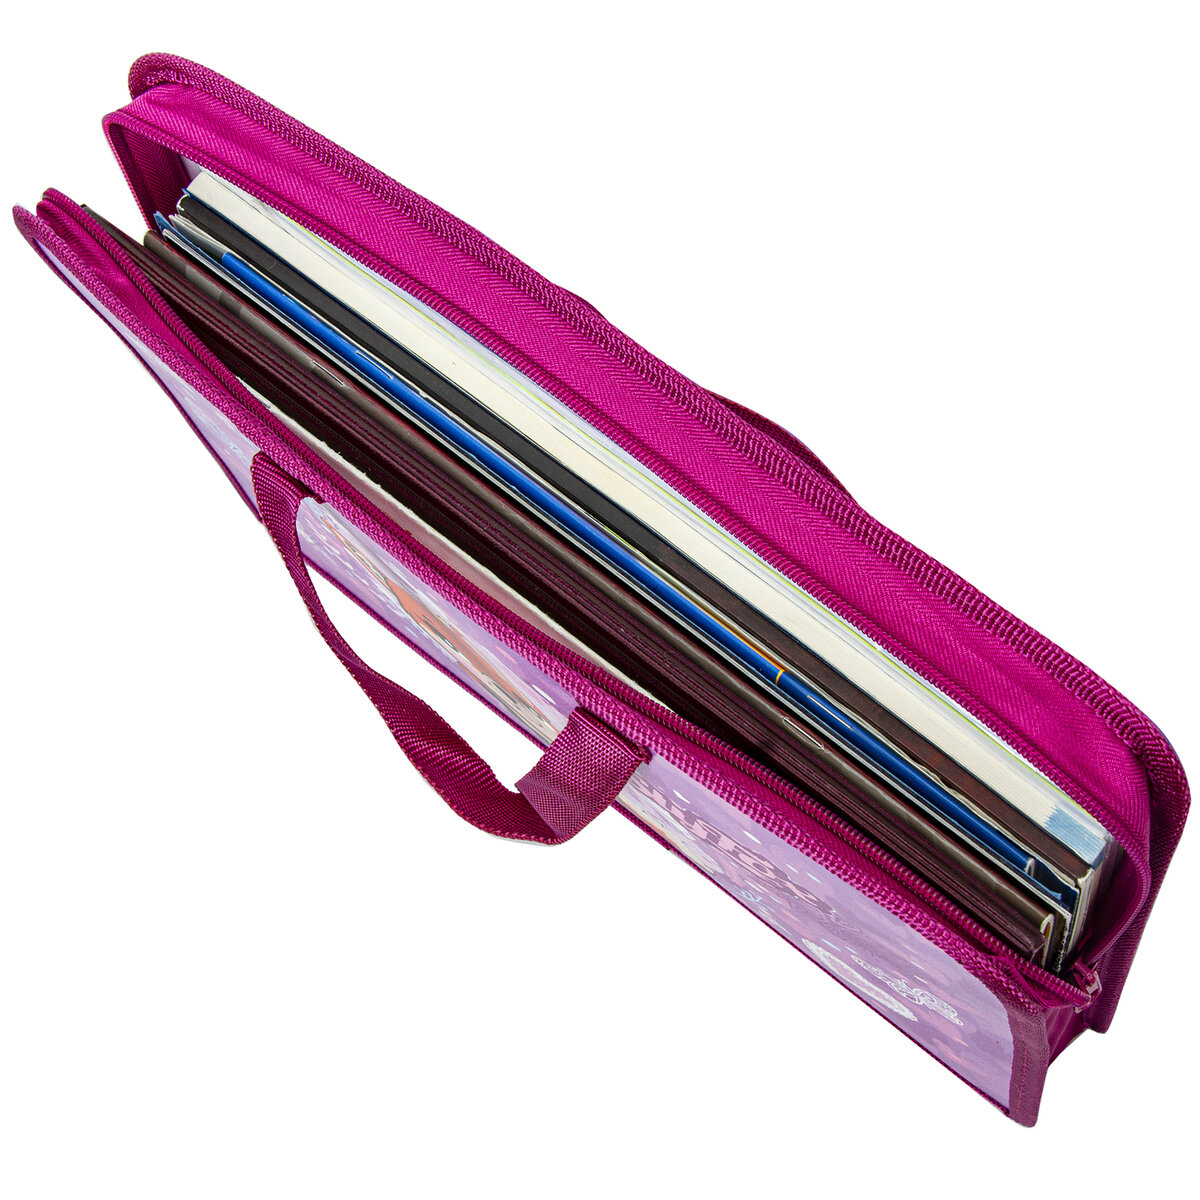 Папка-сумка Юнландия для документов бумаг тетрадей для школы канцелярская с ручками на молнии - фото 4